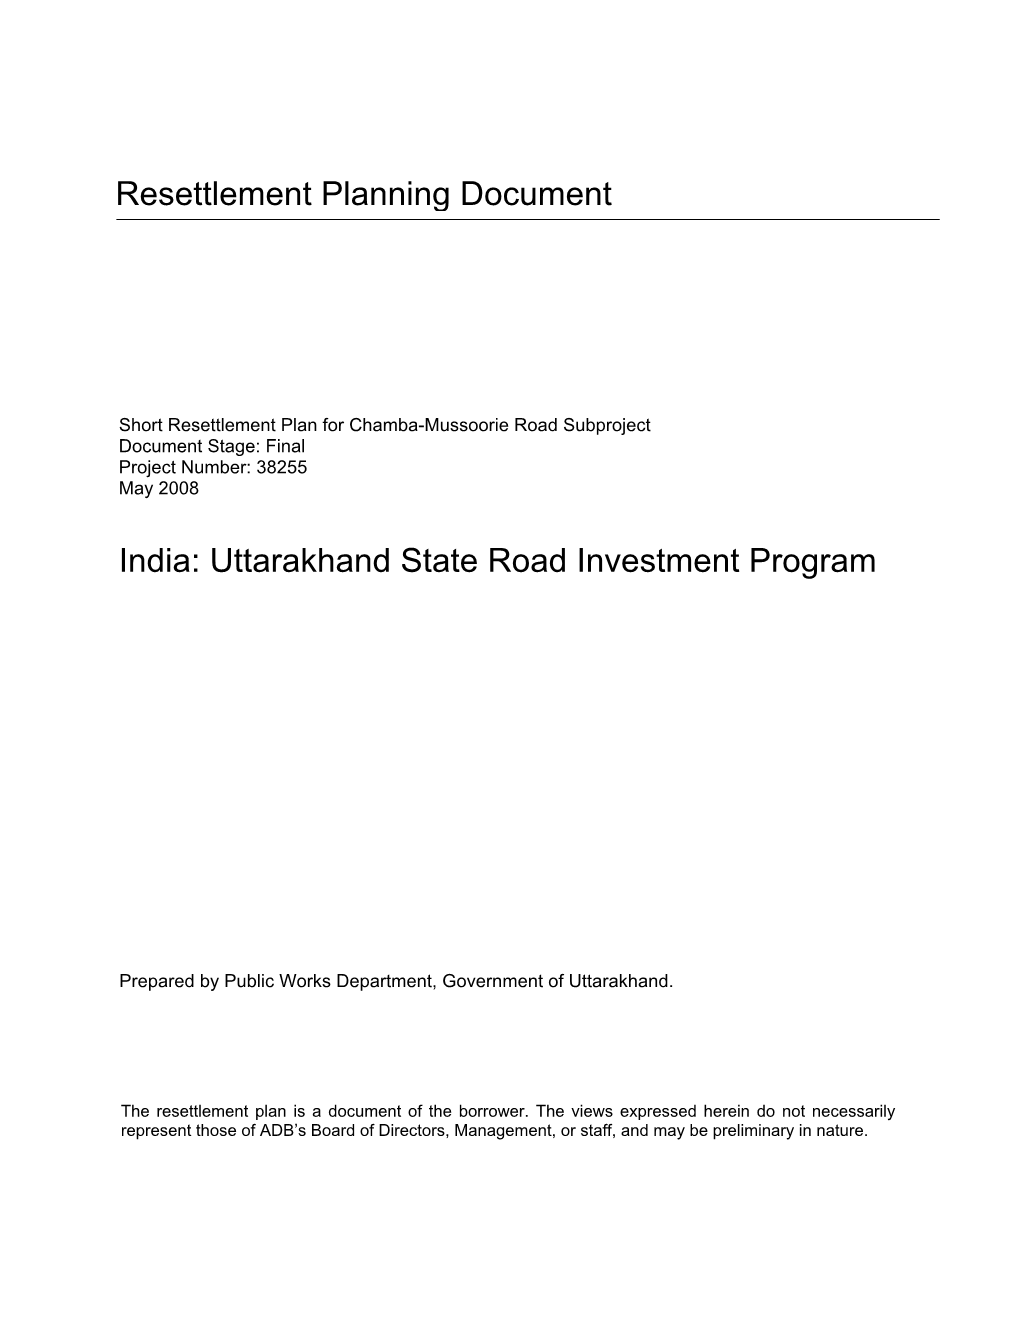 Uttarakhand State Road Investment Program